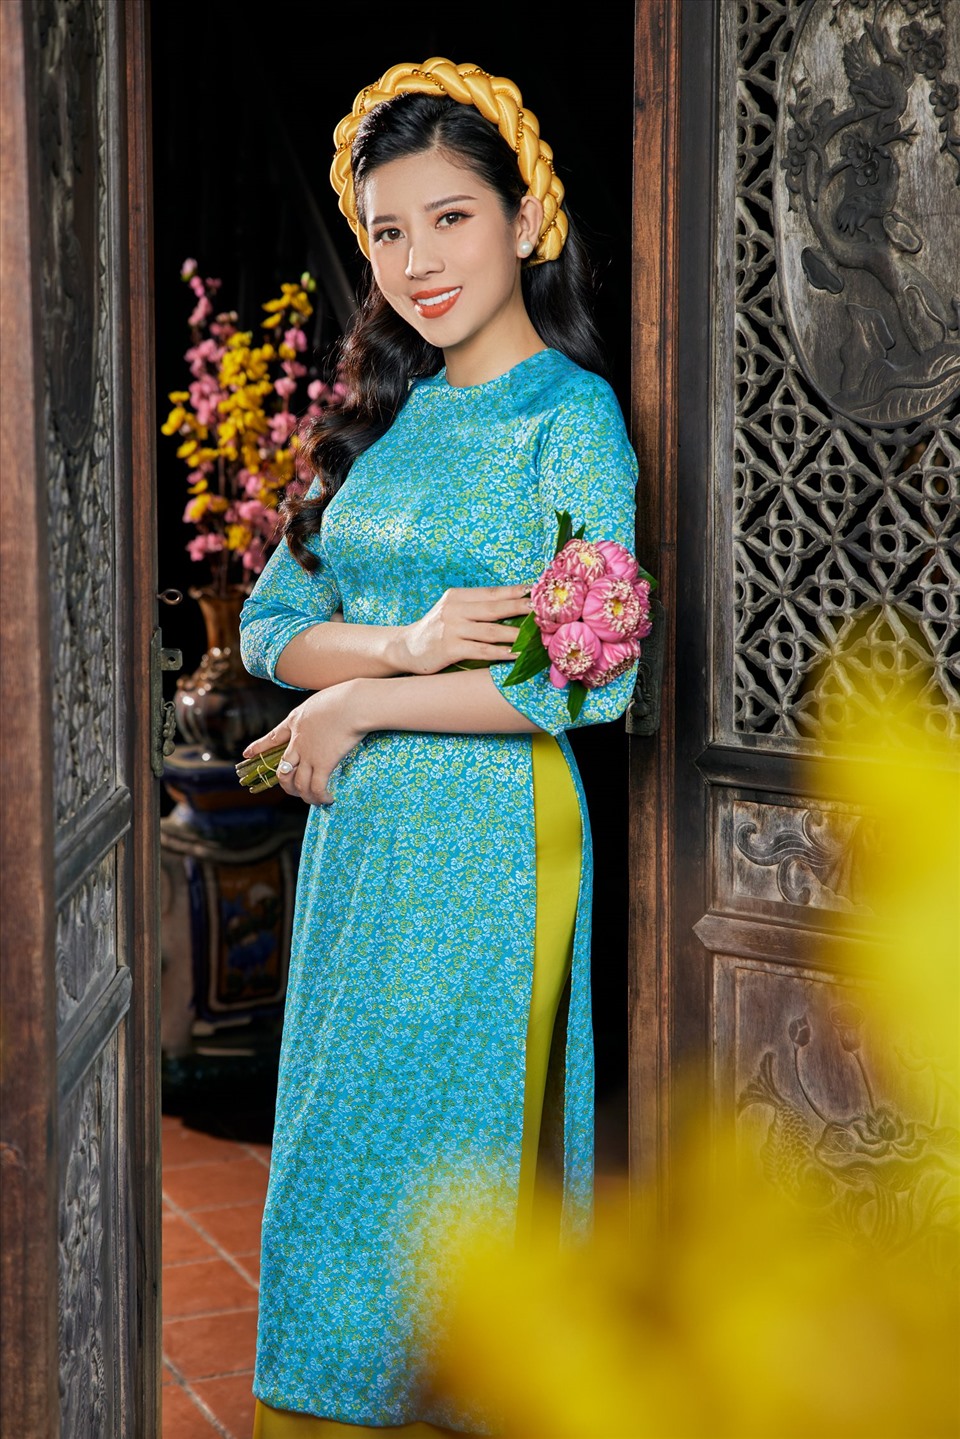 Sử dụng yếu tố cách tân và sáng tạo nhưng Dương Yến Nhung vẫn ưu tiên gìn giữ nét đặc trưng truyền thống của áo dài Việt Nam. Người đẹp mong muốn có thể dung hòa giữa hai yếu tố này để giúp các cô gái tuổi đôi mươi tỏa sáng nhất với nét đẹp rạng ngời mà mình có.